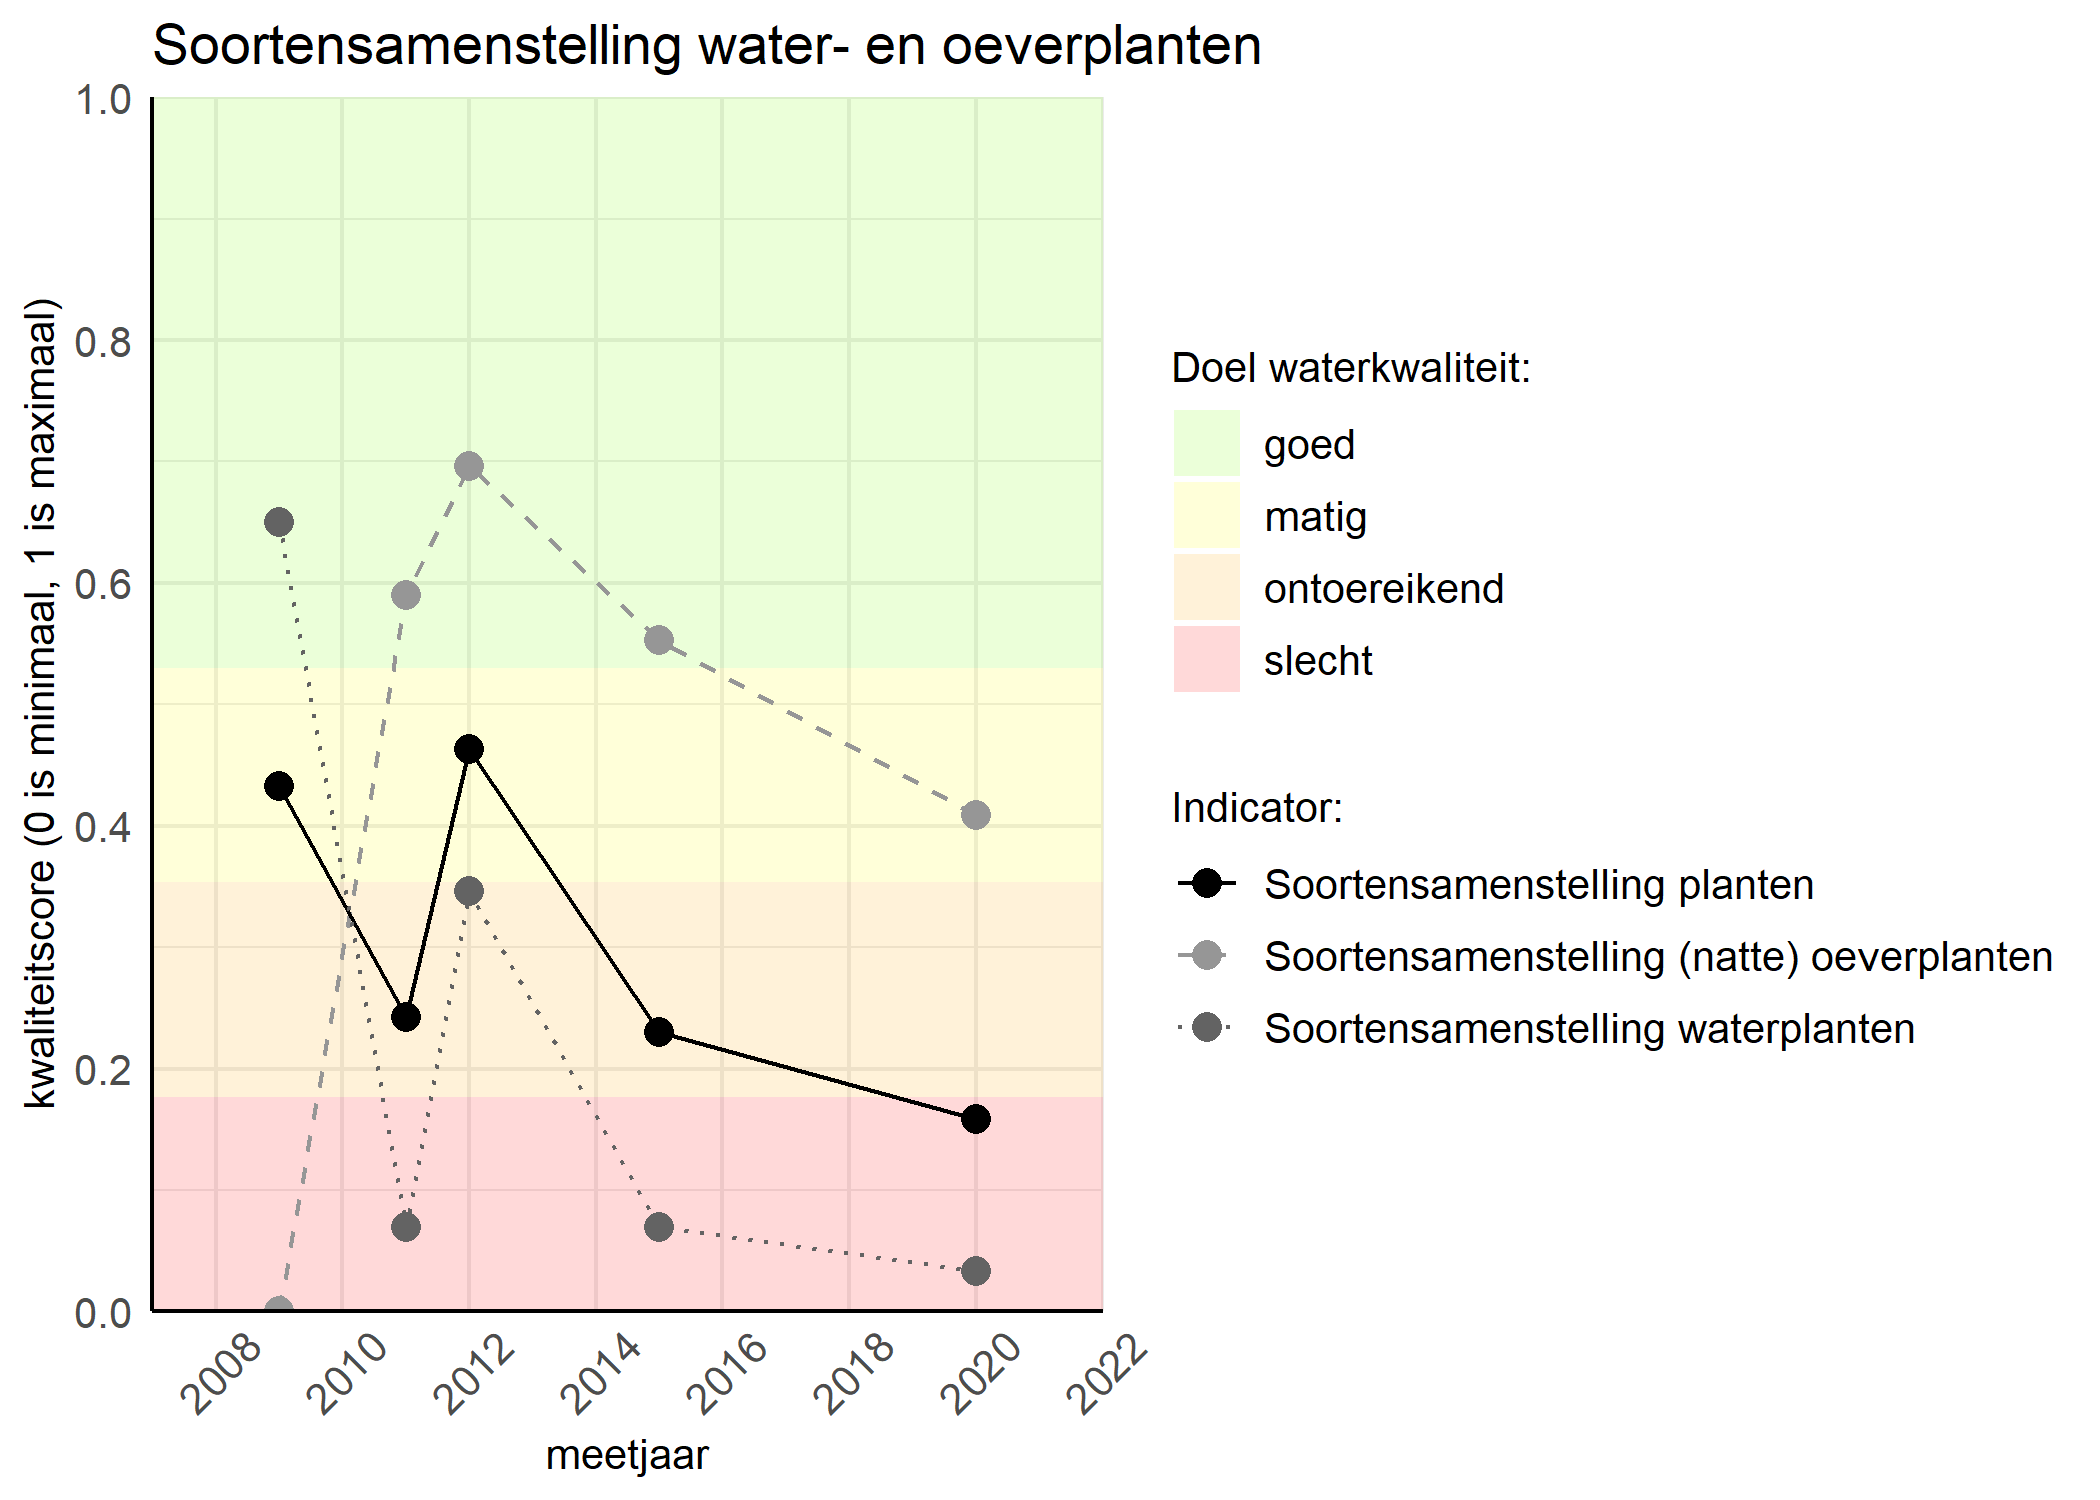 Figure 4: Kwaliteitsscore van de soortensamenstelling waterplanten vergeleken met doelen. De achtergrondkleuren in het figuur zijn het kwaliteitsoordeel en de stippen zijn de kwaliteitscores per jaar. Als de lijn over de groene achtergrondkleur valt is het doel gehaald.